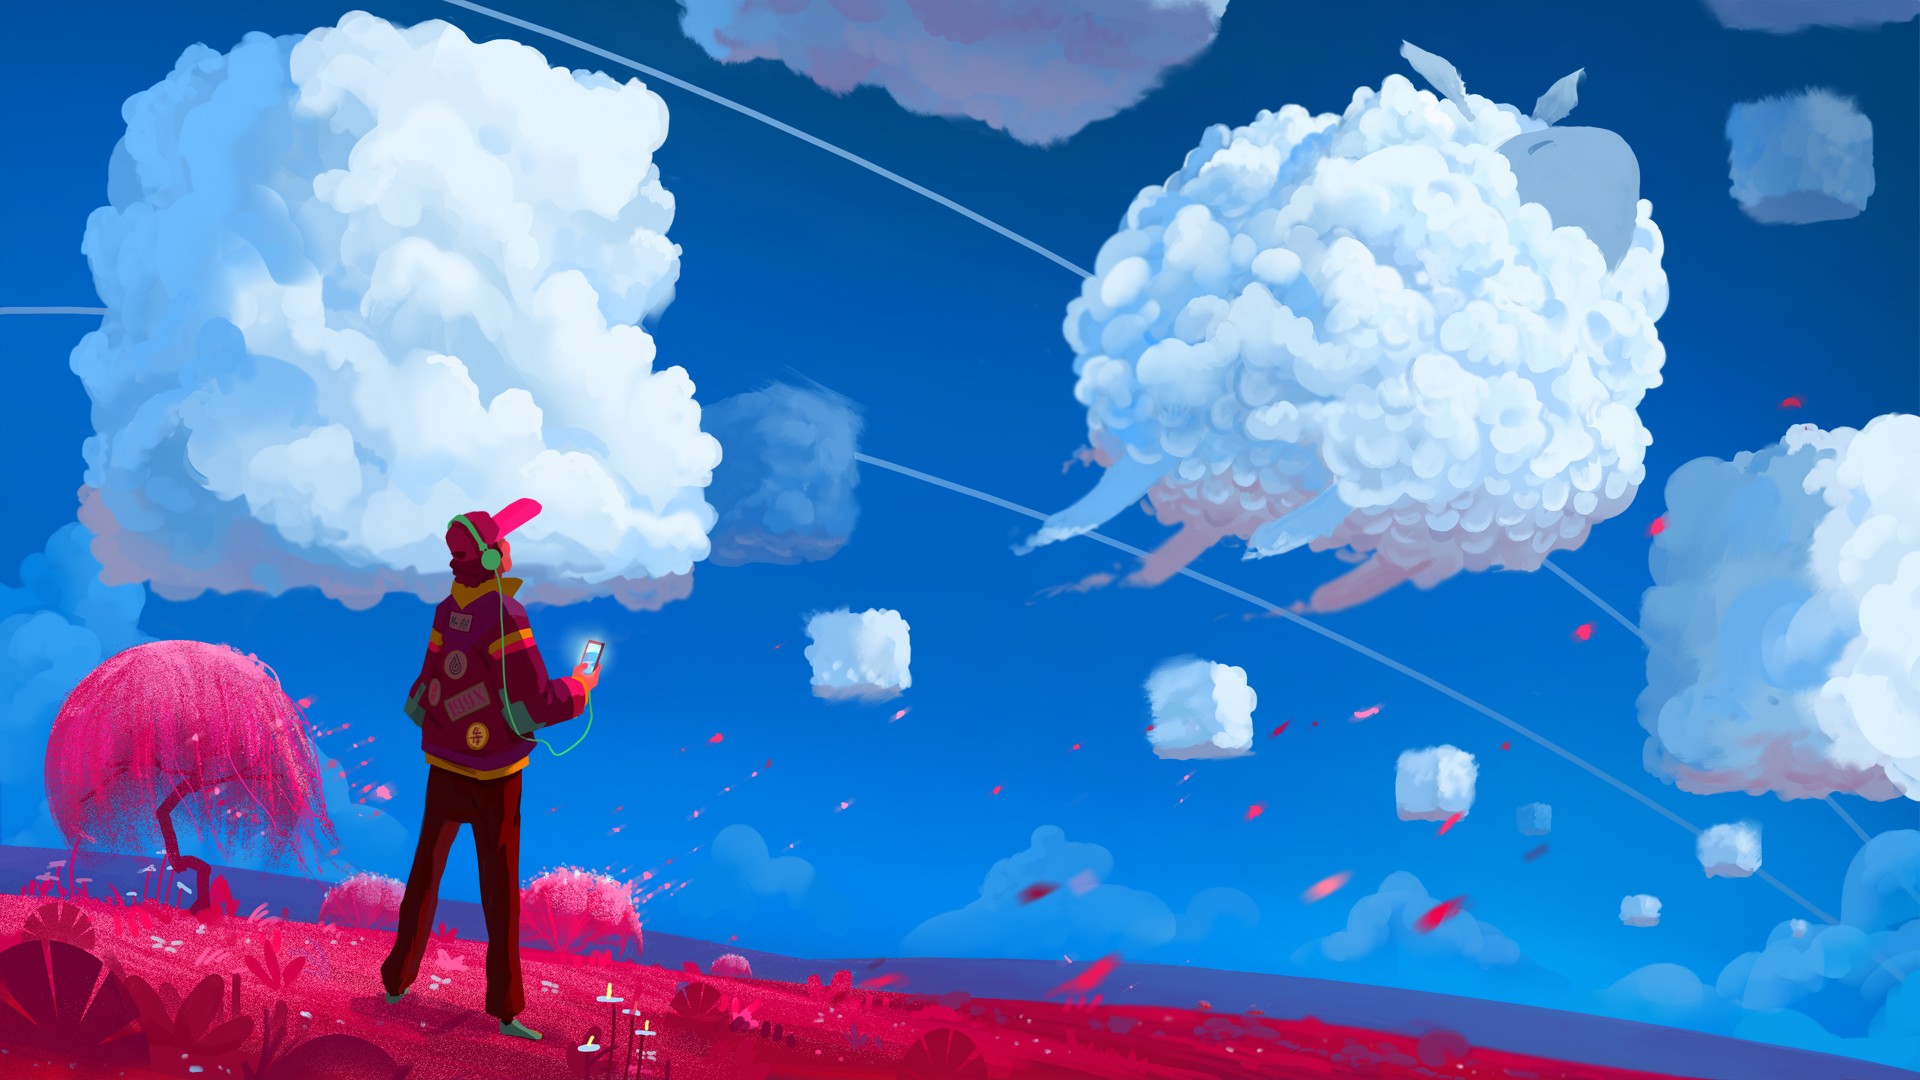 artwork, Clouds Wallpaper